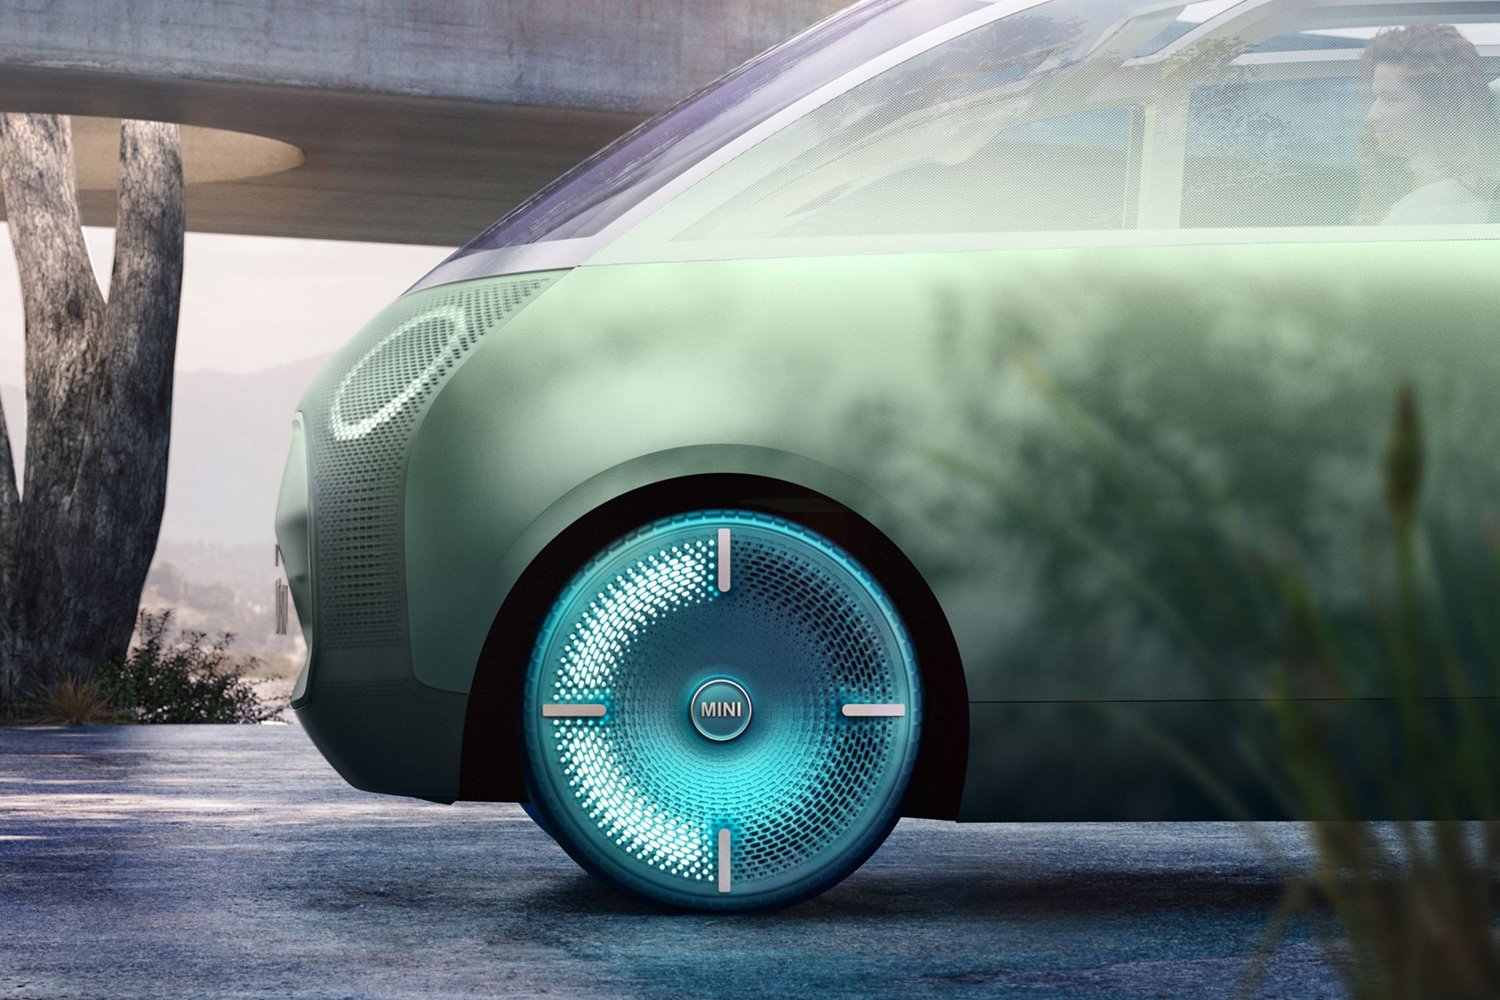 coche conceptual vision urbanaut mini detalle rueda